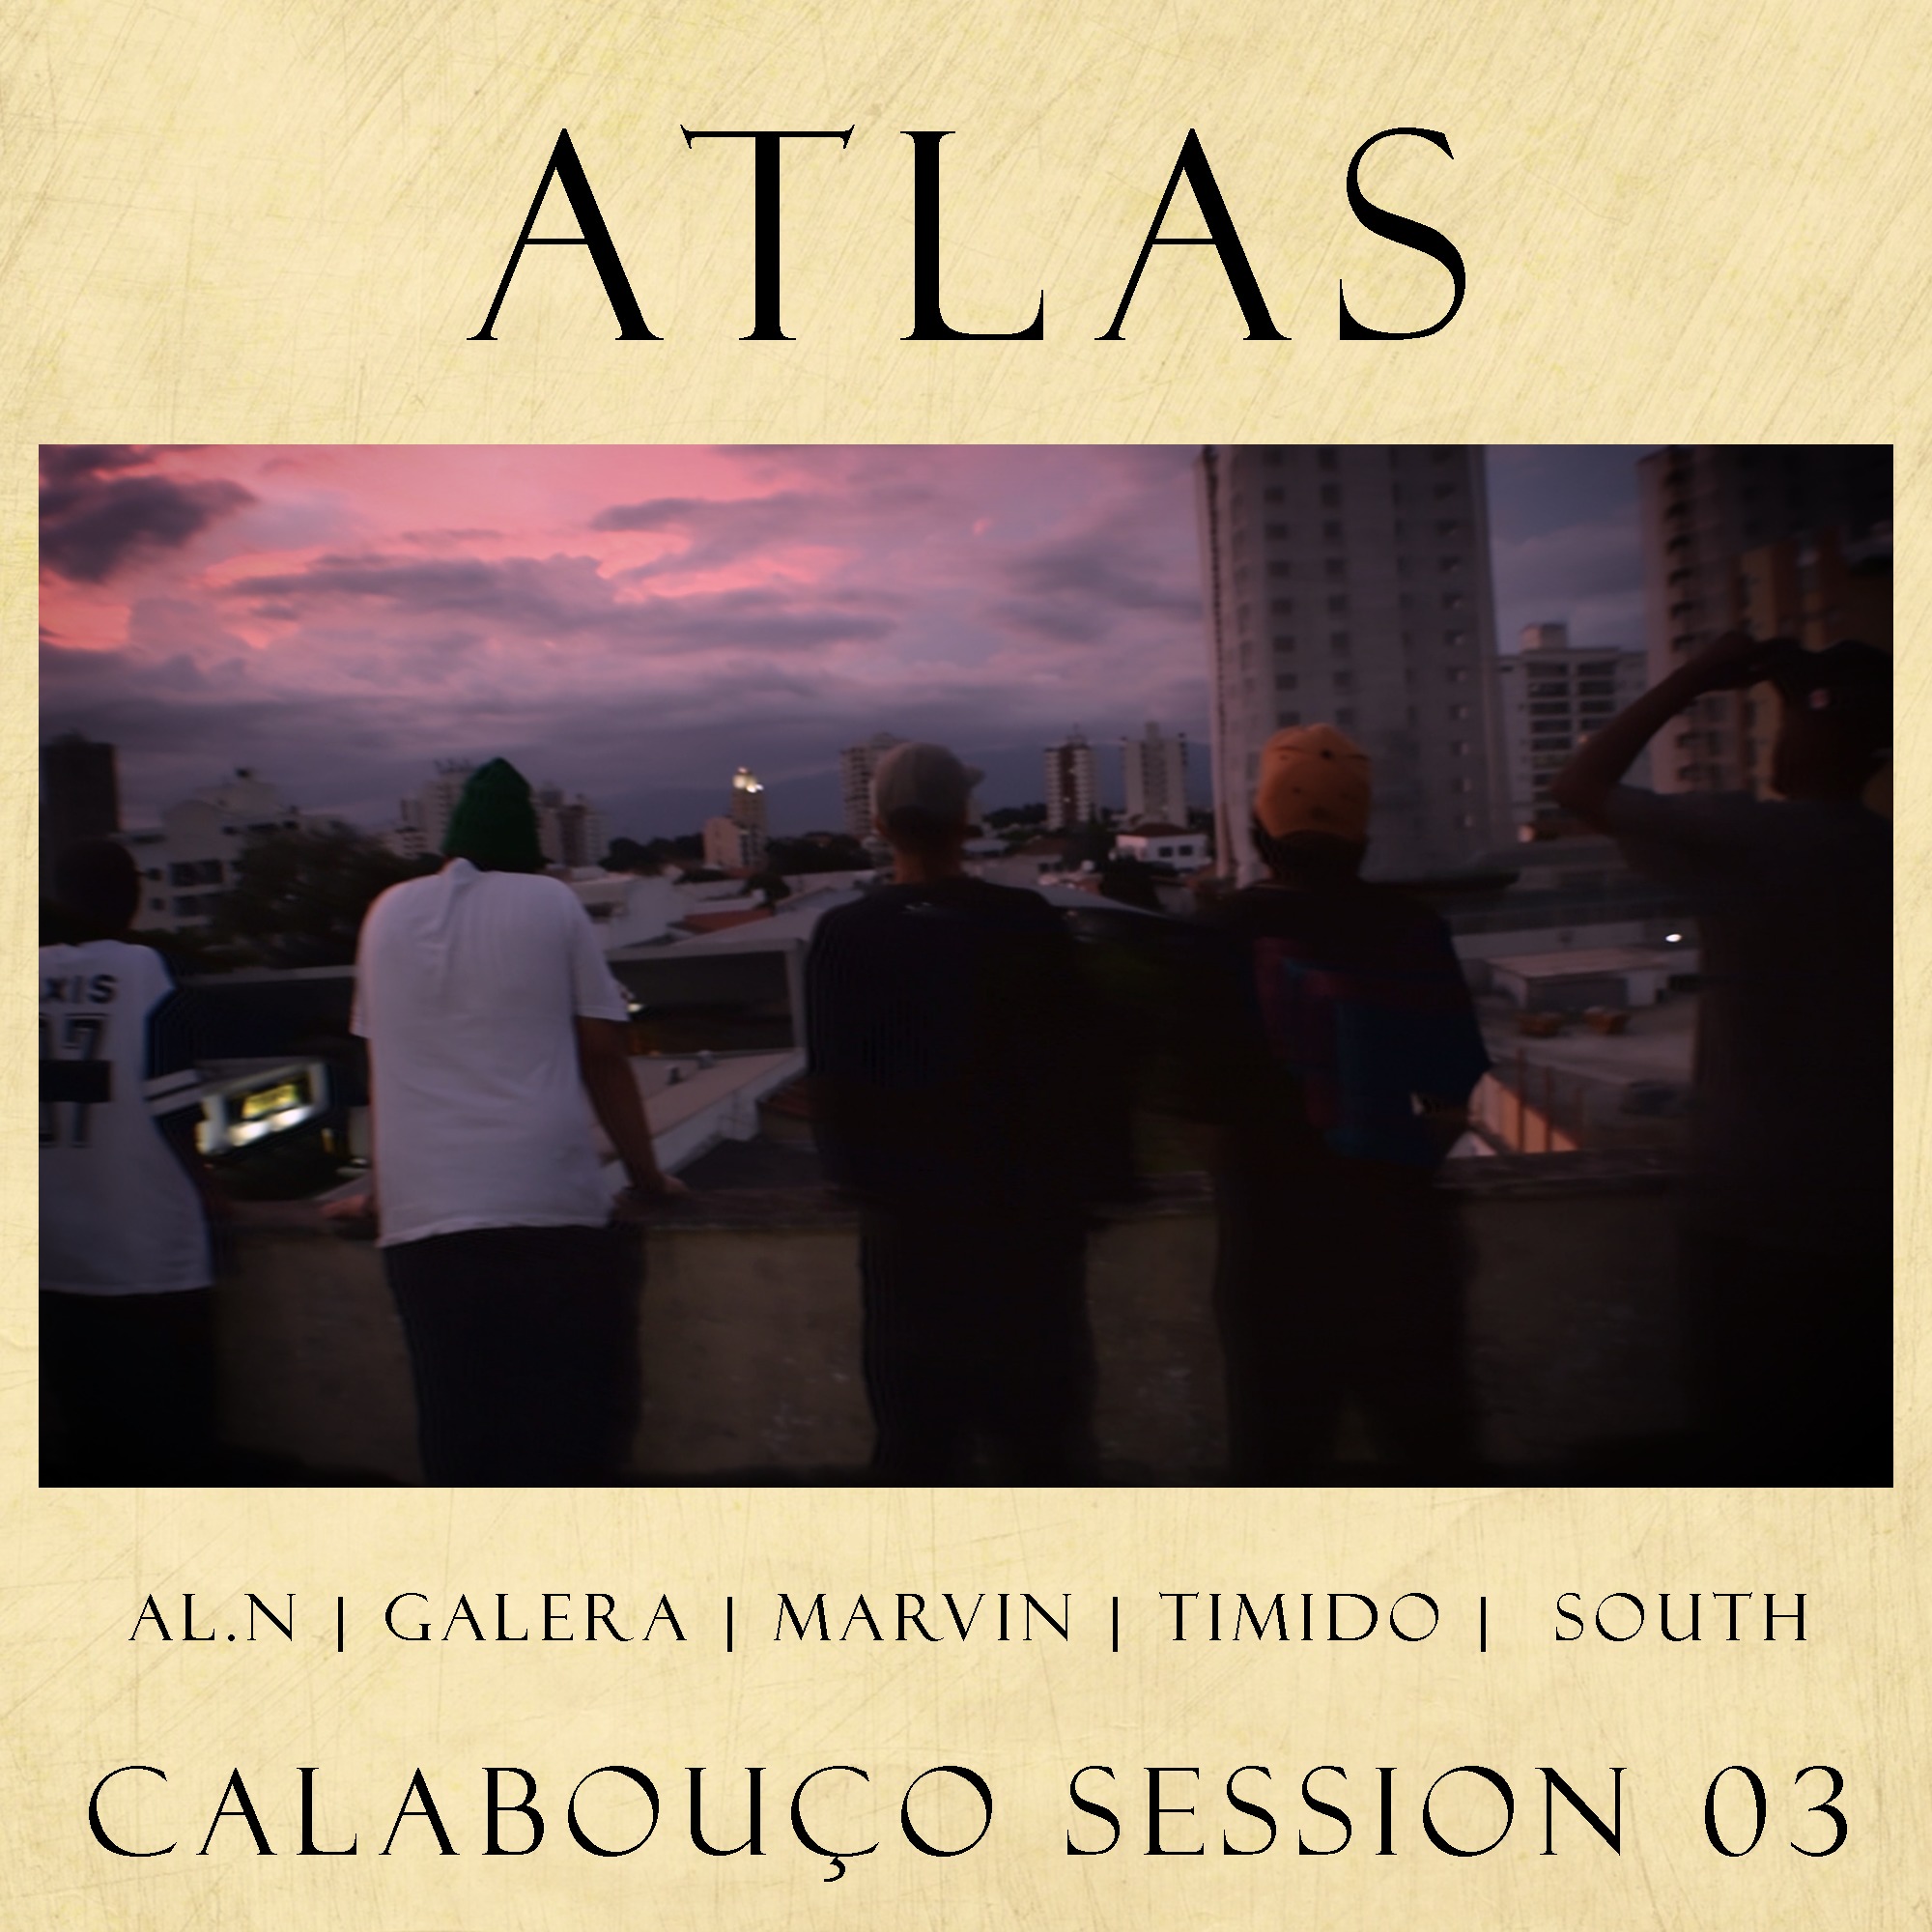 Calabou o, Session 03: Atlas